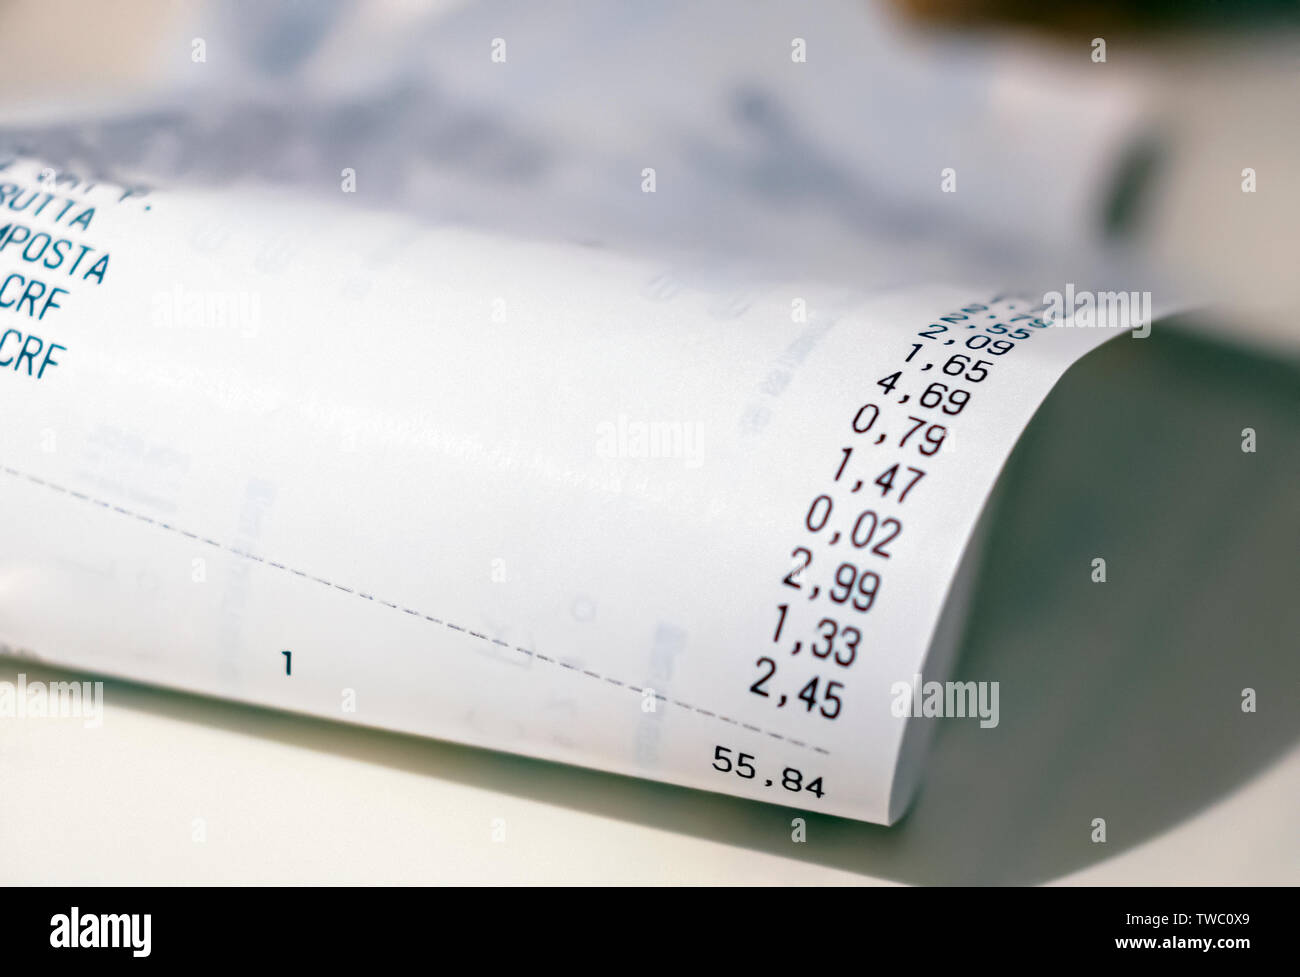 Vista ravvicinata della quantità totale di supermercato spesa stampate su una ricevuta della carta. Negozio di generi alimentari shopping list Foto Stock